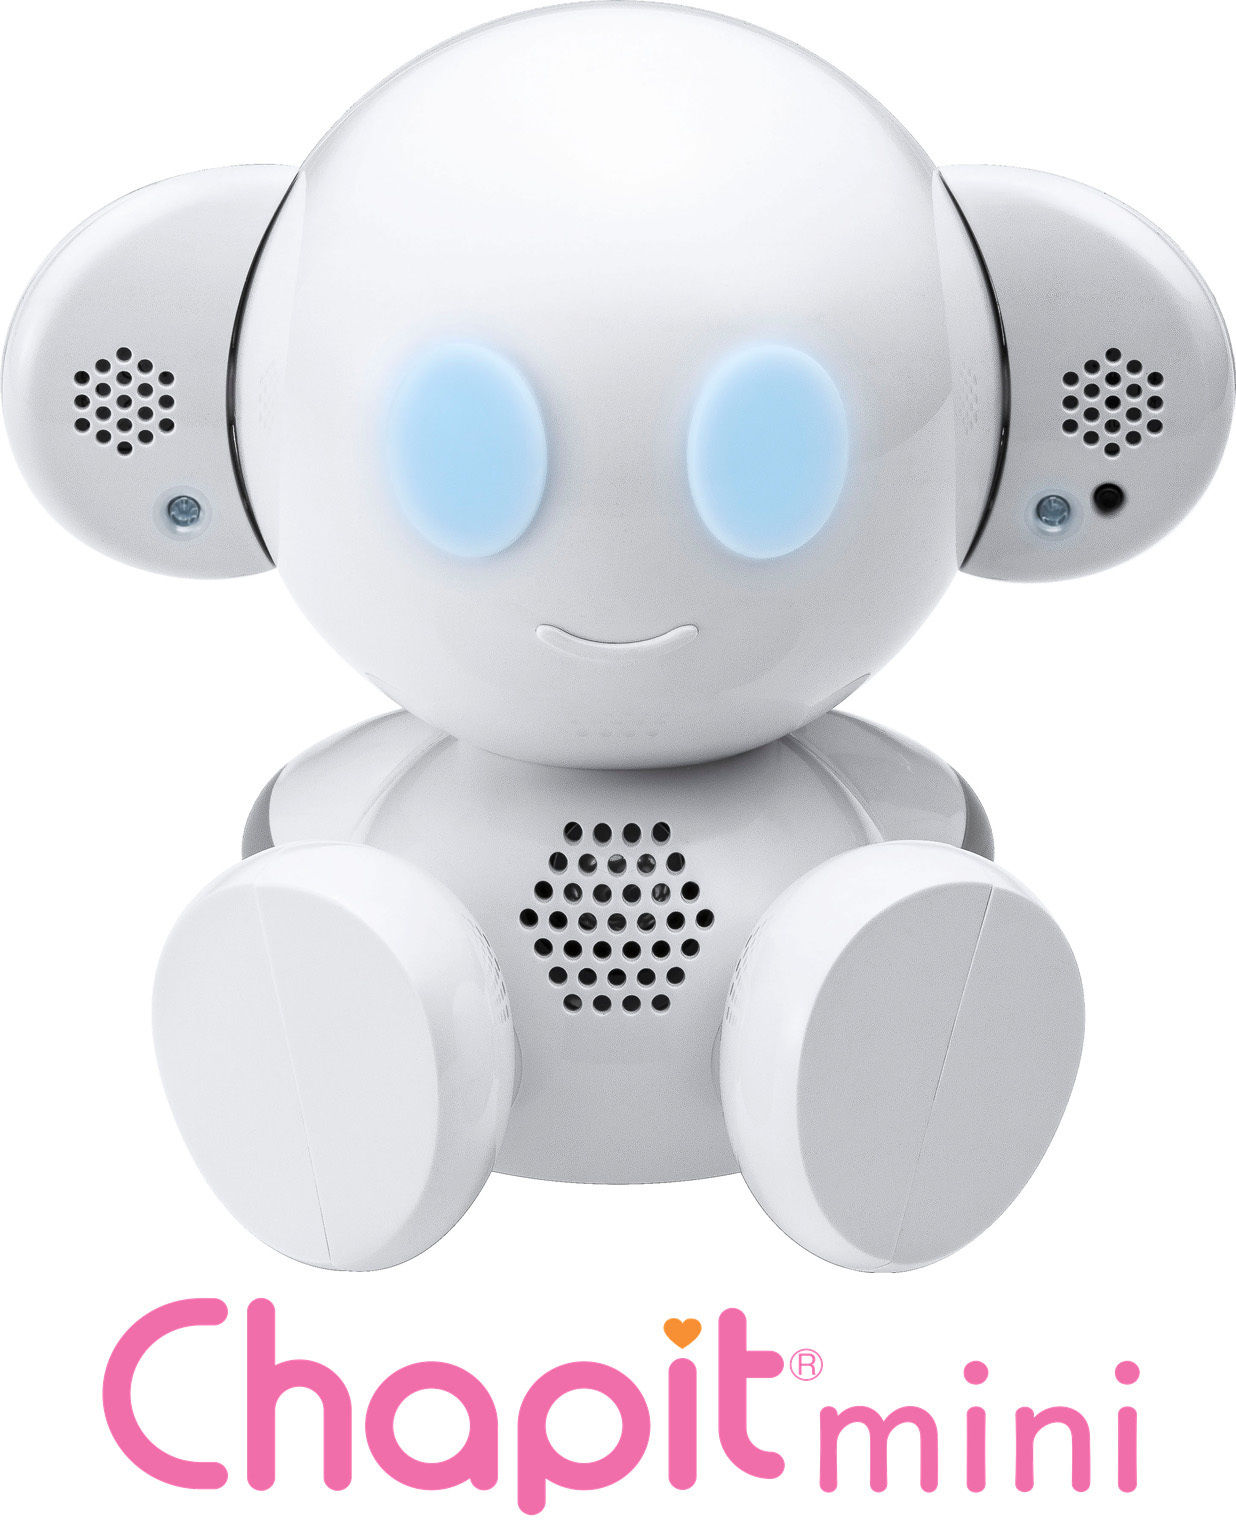 即購入 音声認識コミュニケーションロボット『 Chapit 』 (チャピット) ゲーム、おもちゃ